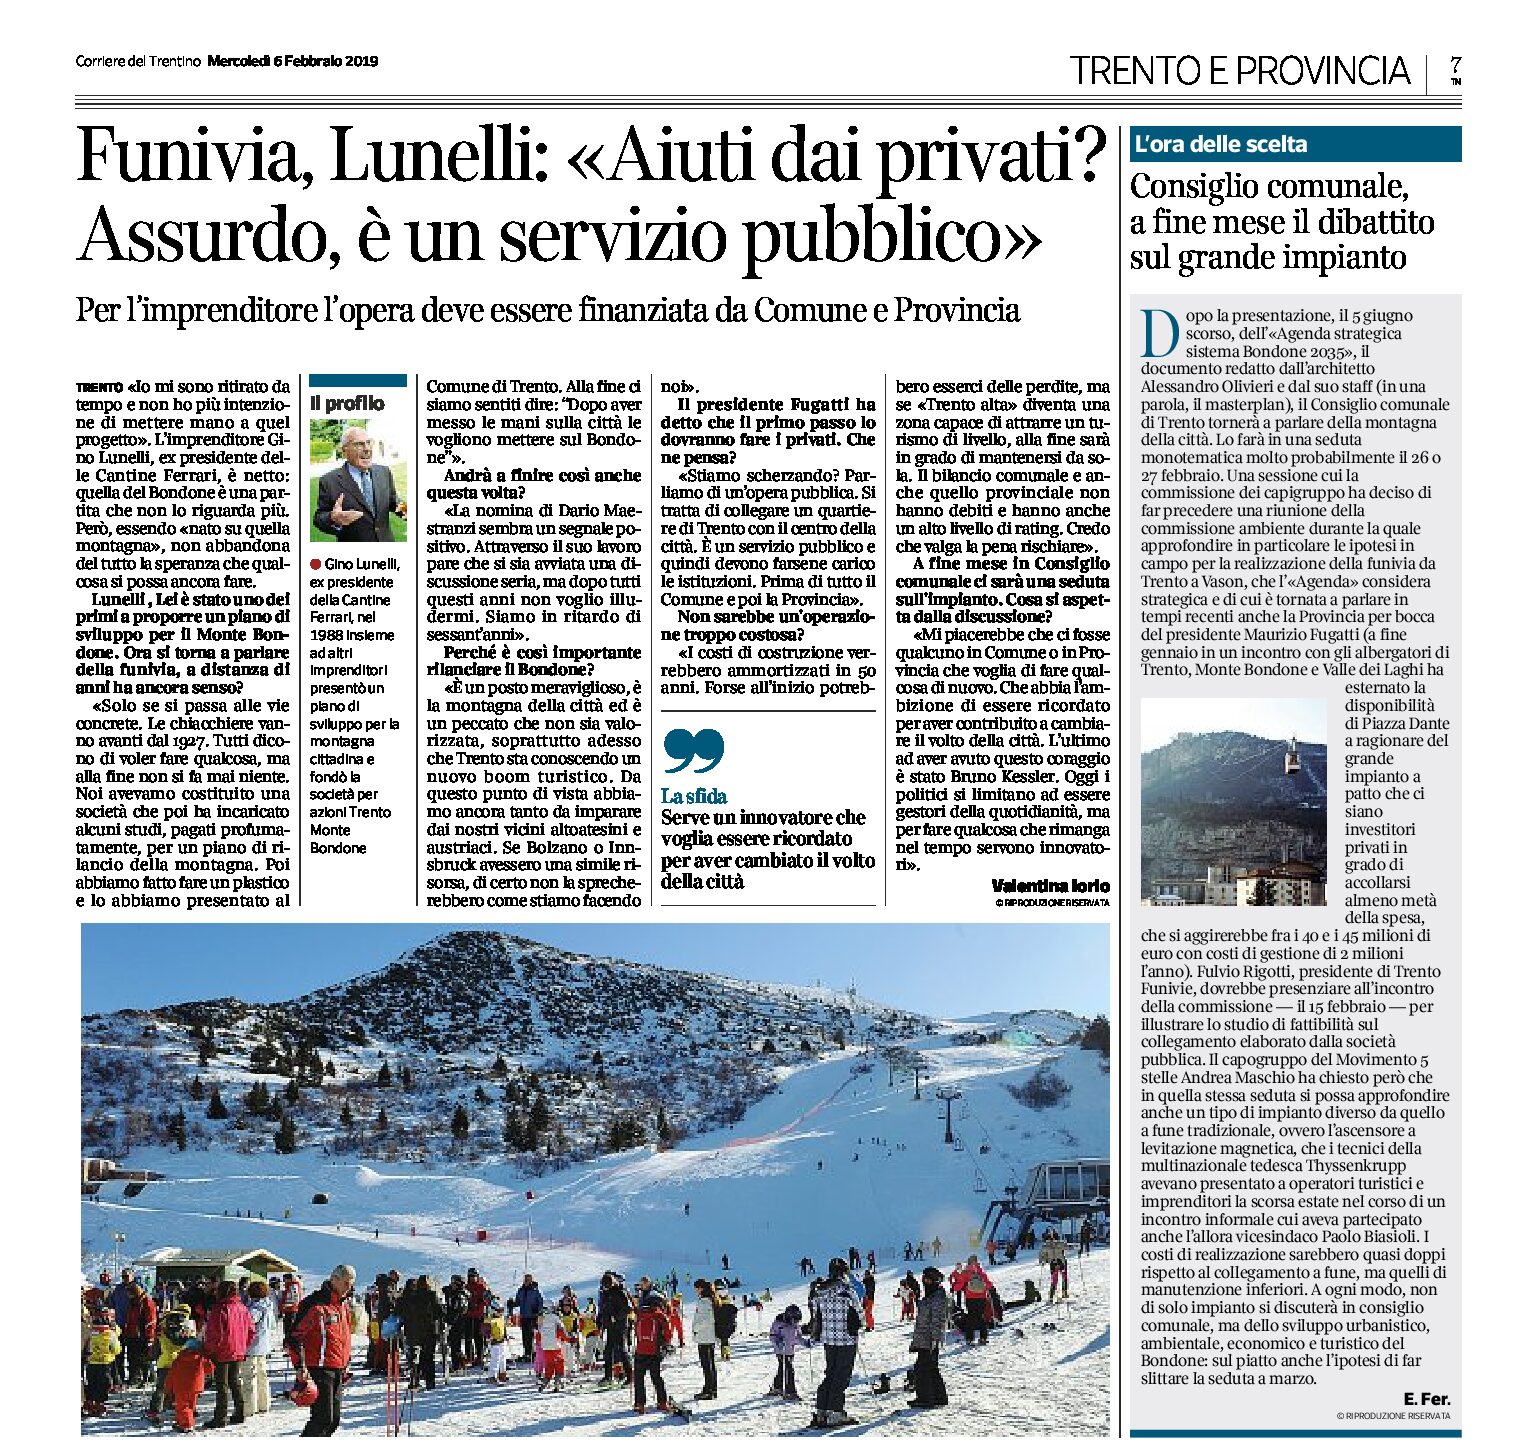 Funivia Trento-Bondone: Lunelli “aiuti dai privati assurdo, è un servizio pubblico”